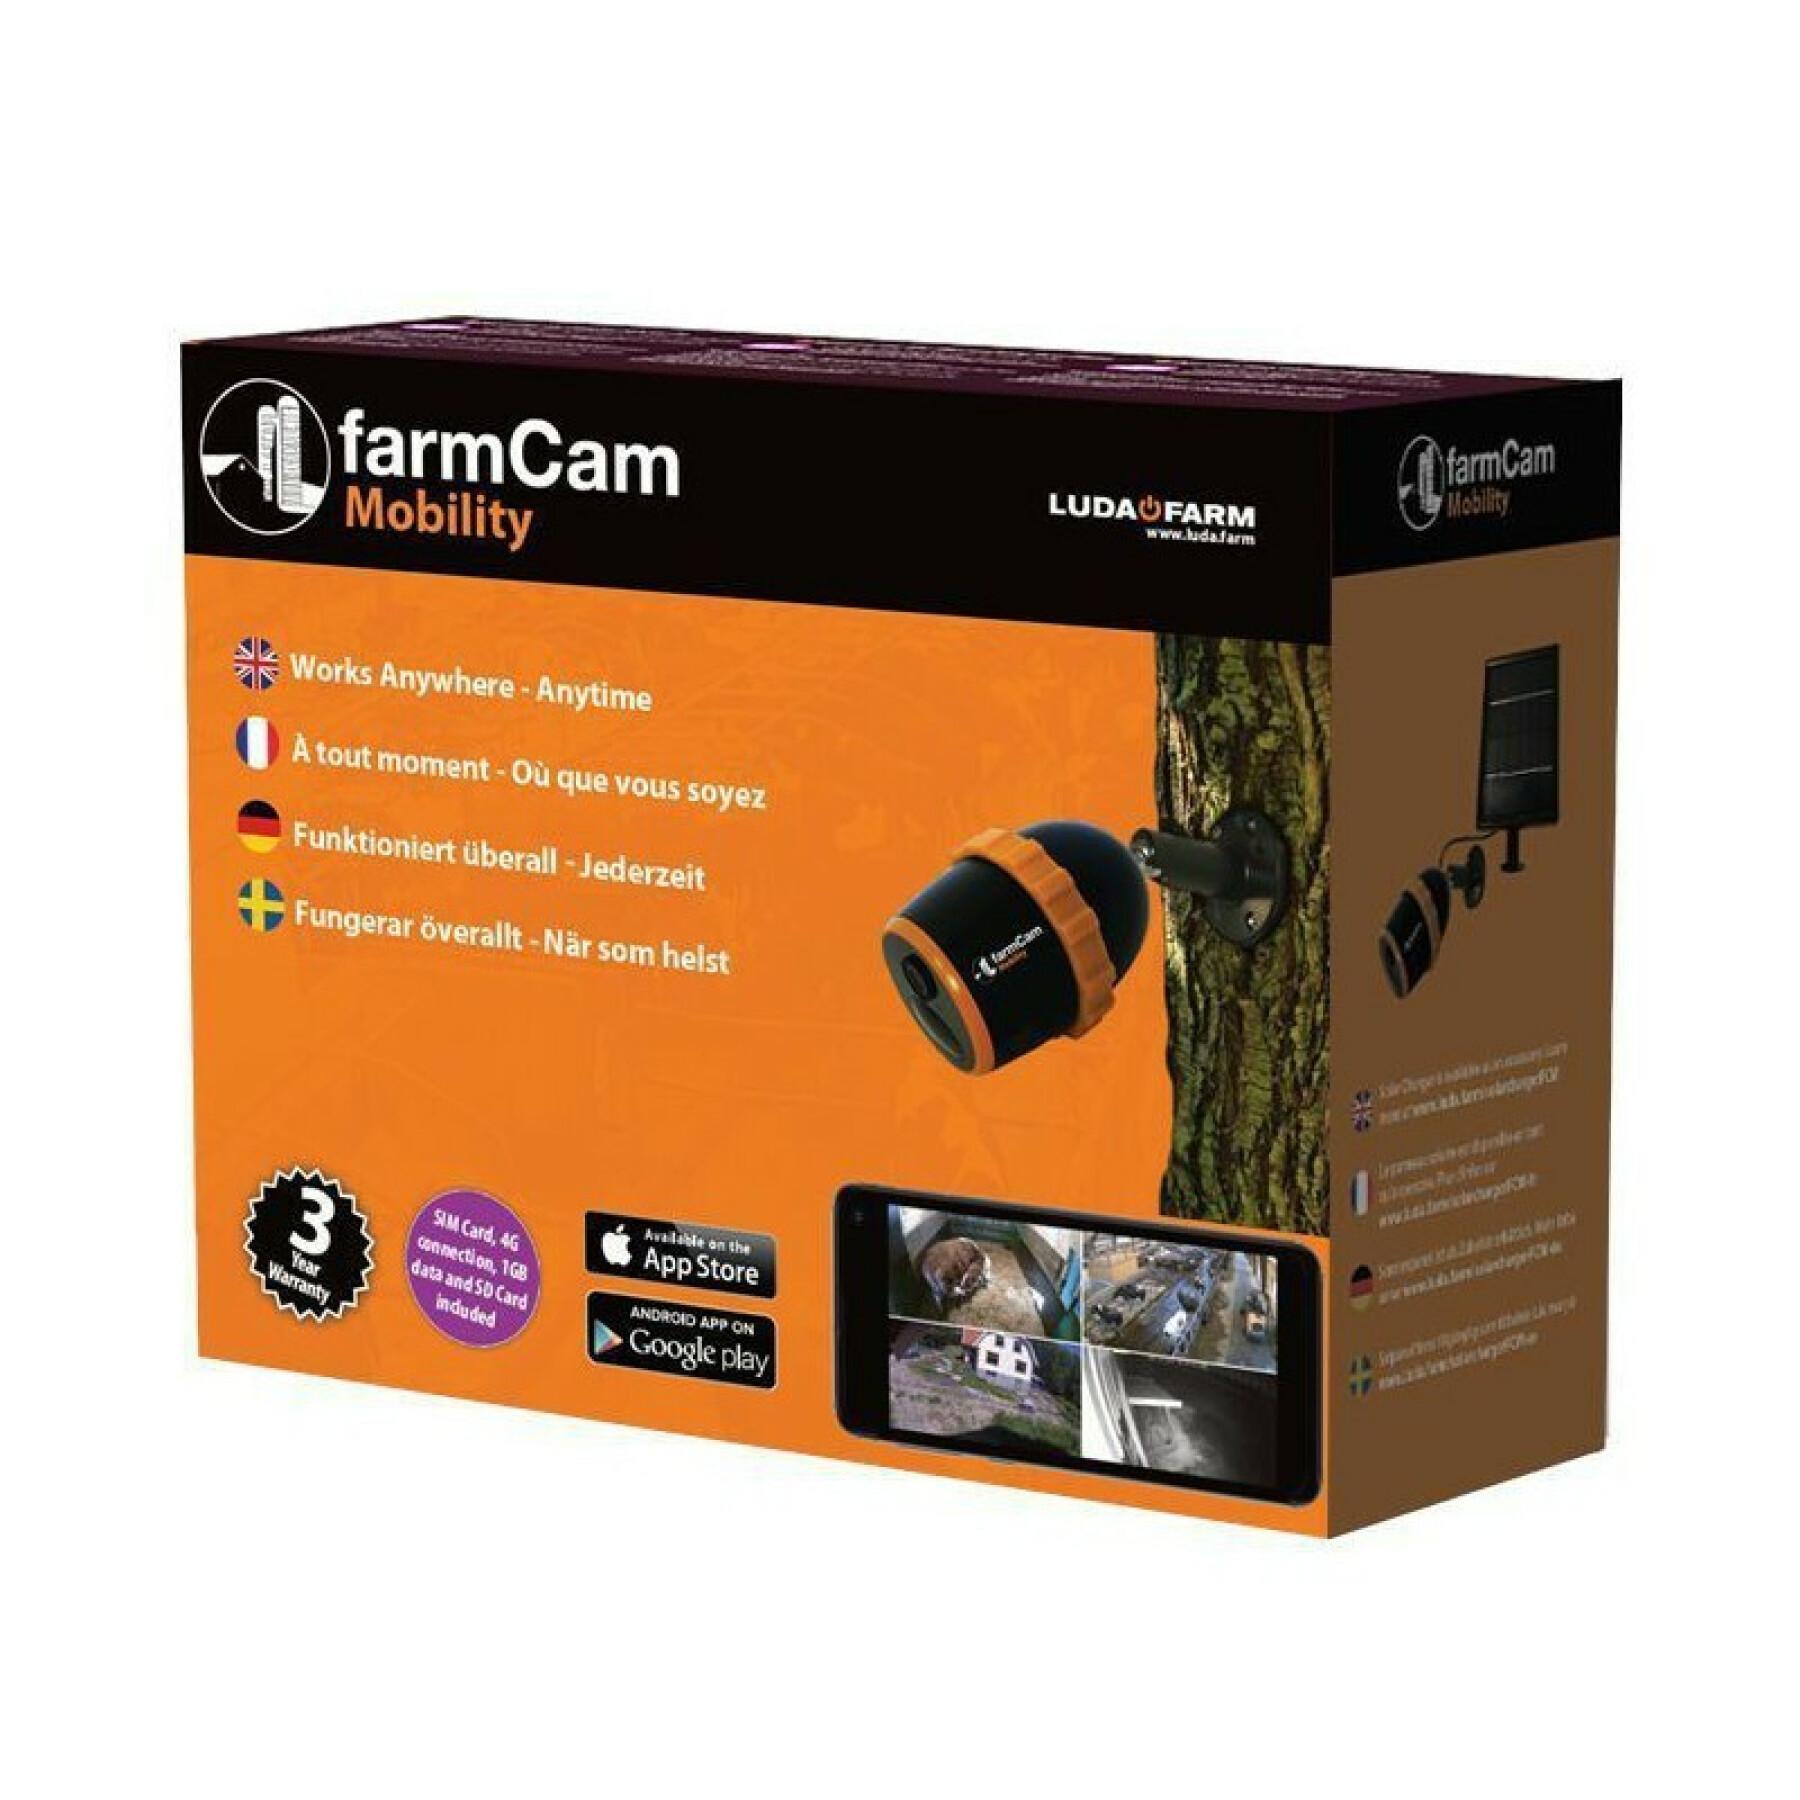 Cámara de vigilancia Luda Farm FarmCam Mobility 4G